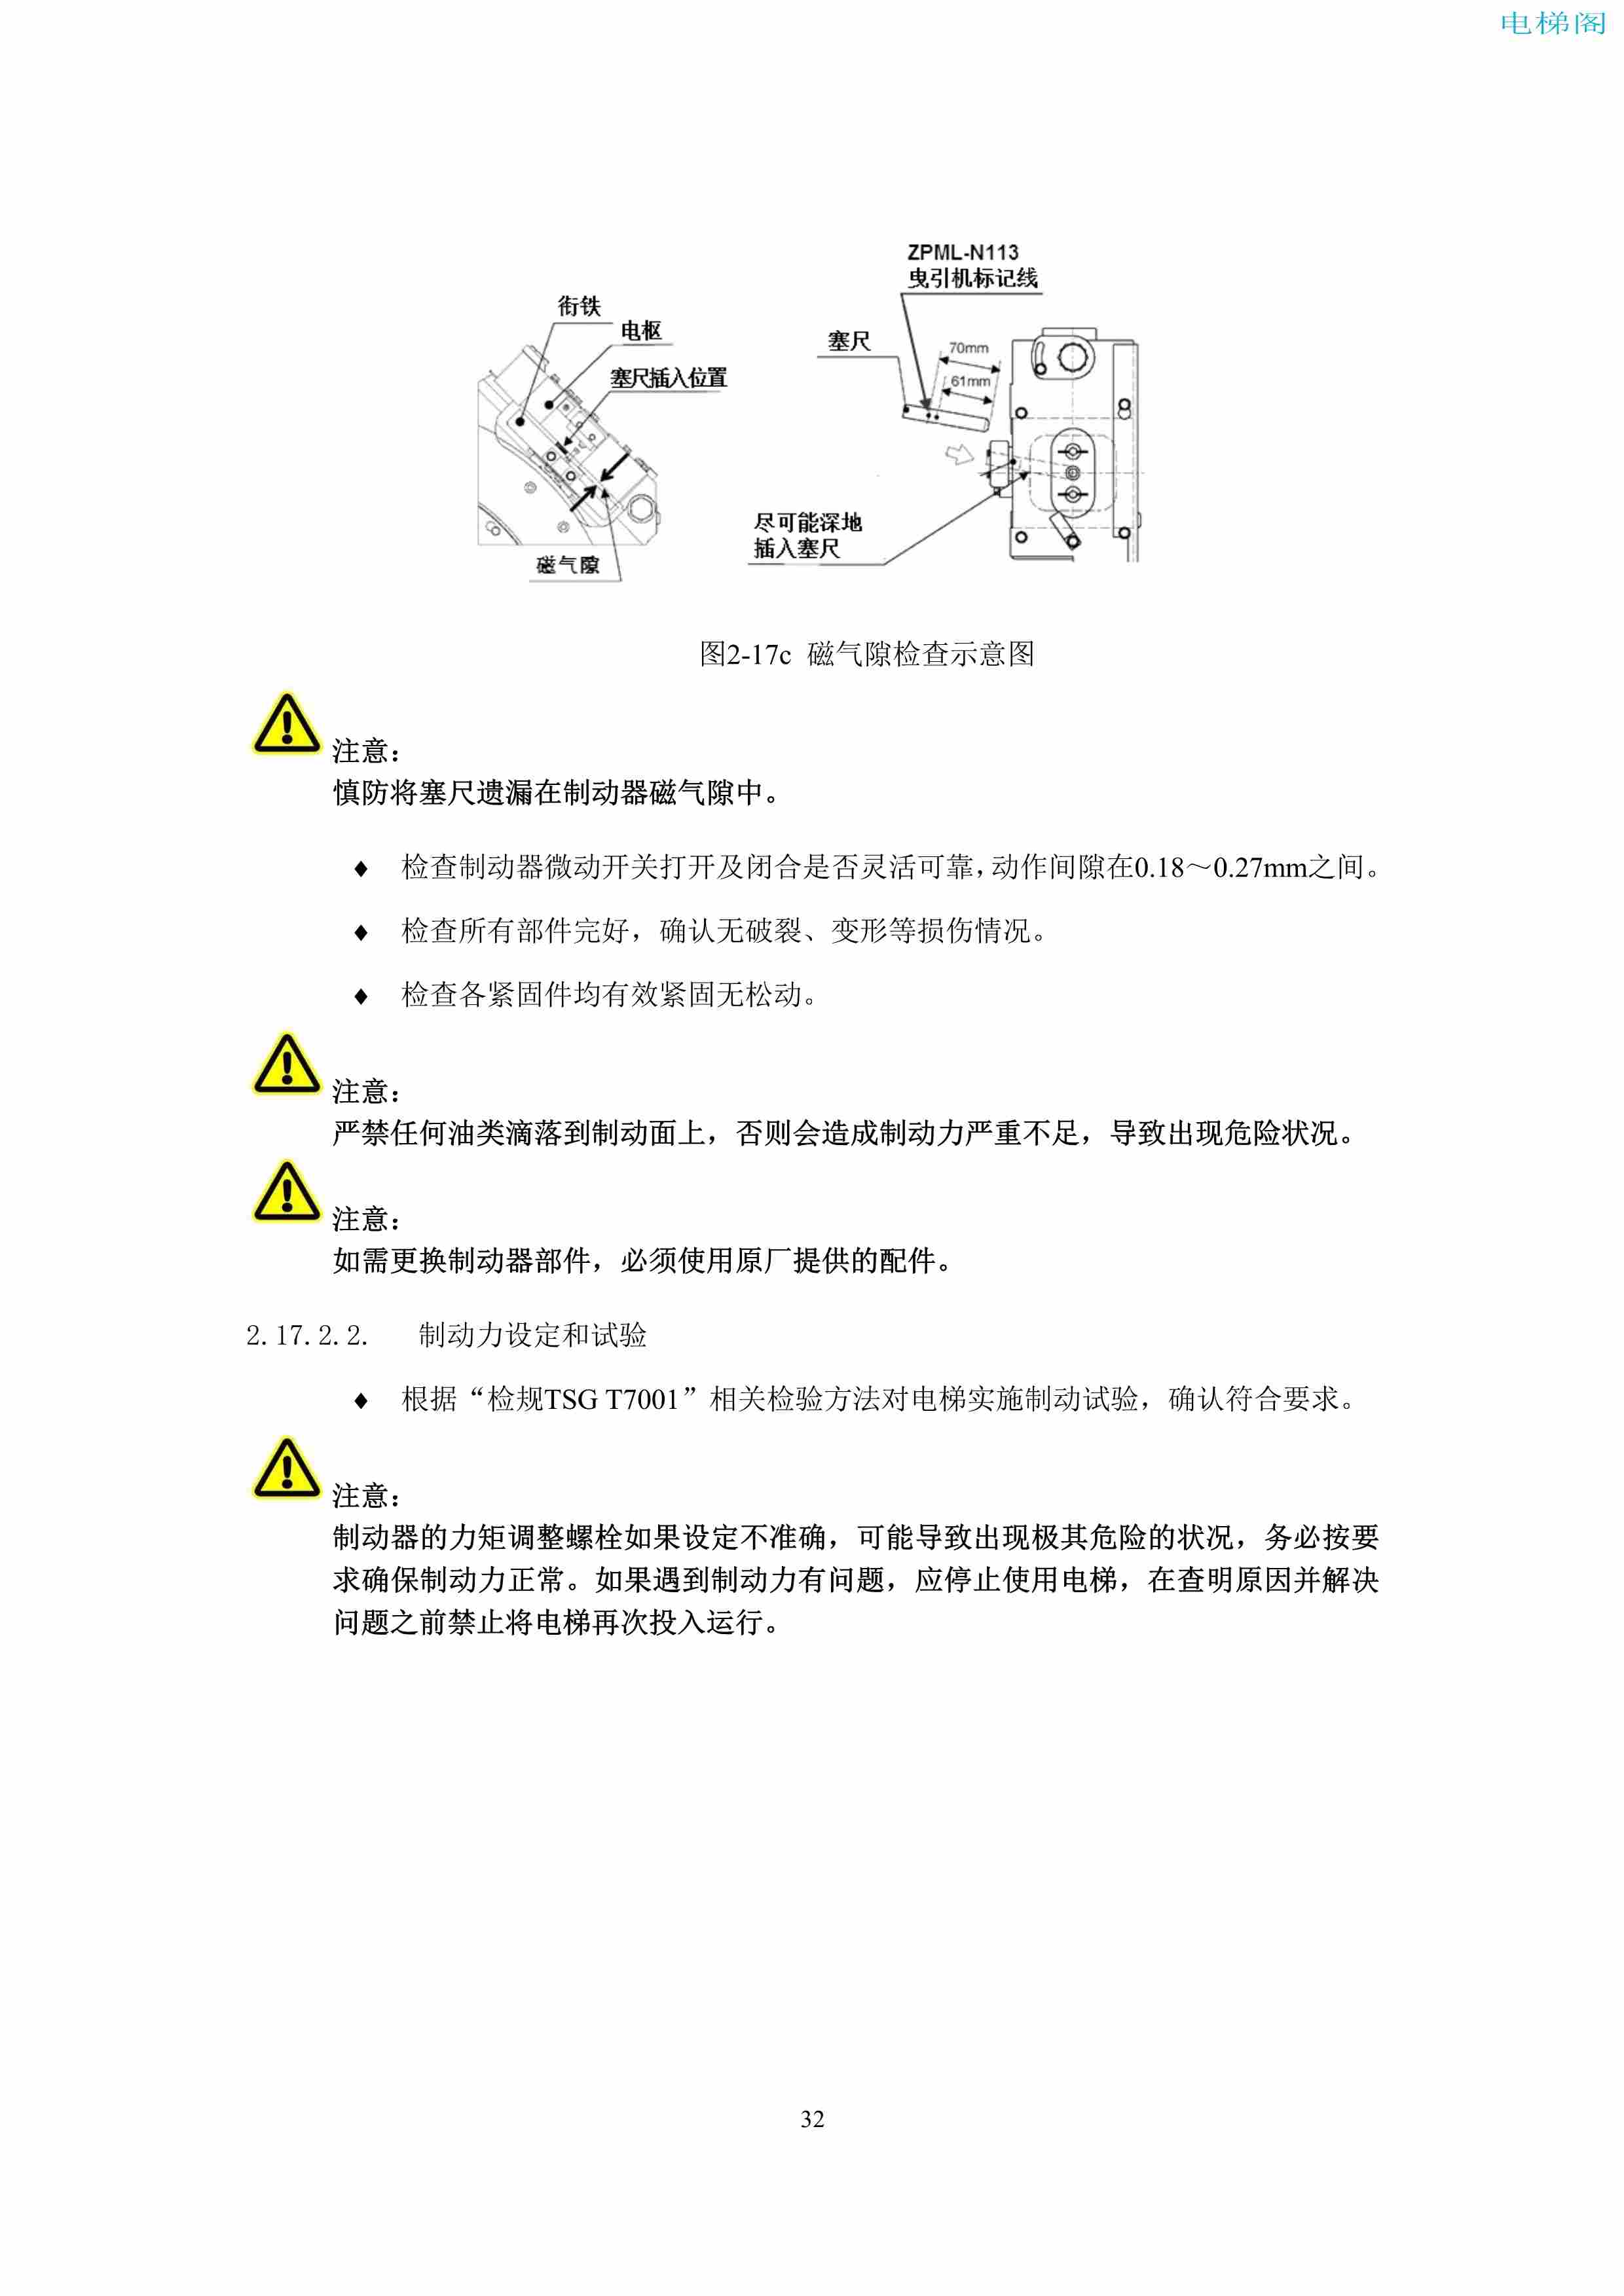 上海三菱电梯有限公司电梯制动器维护作业要领汇编_34.jpg